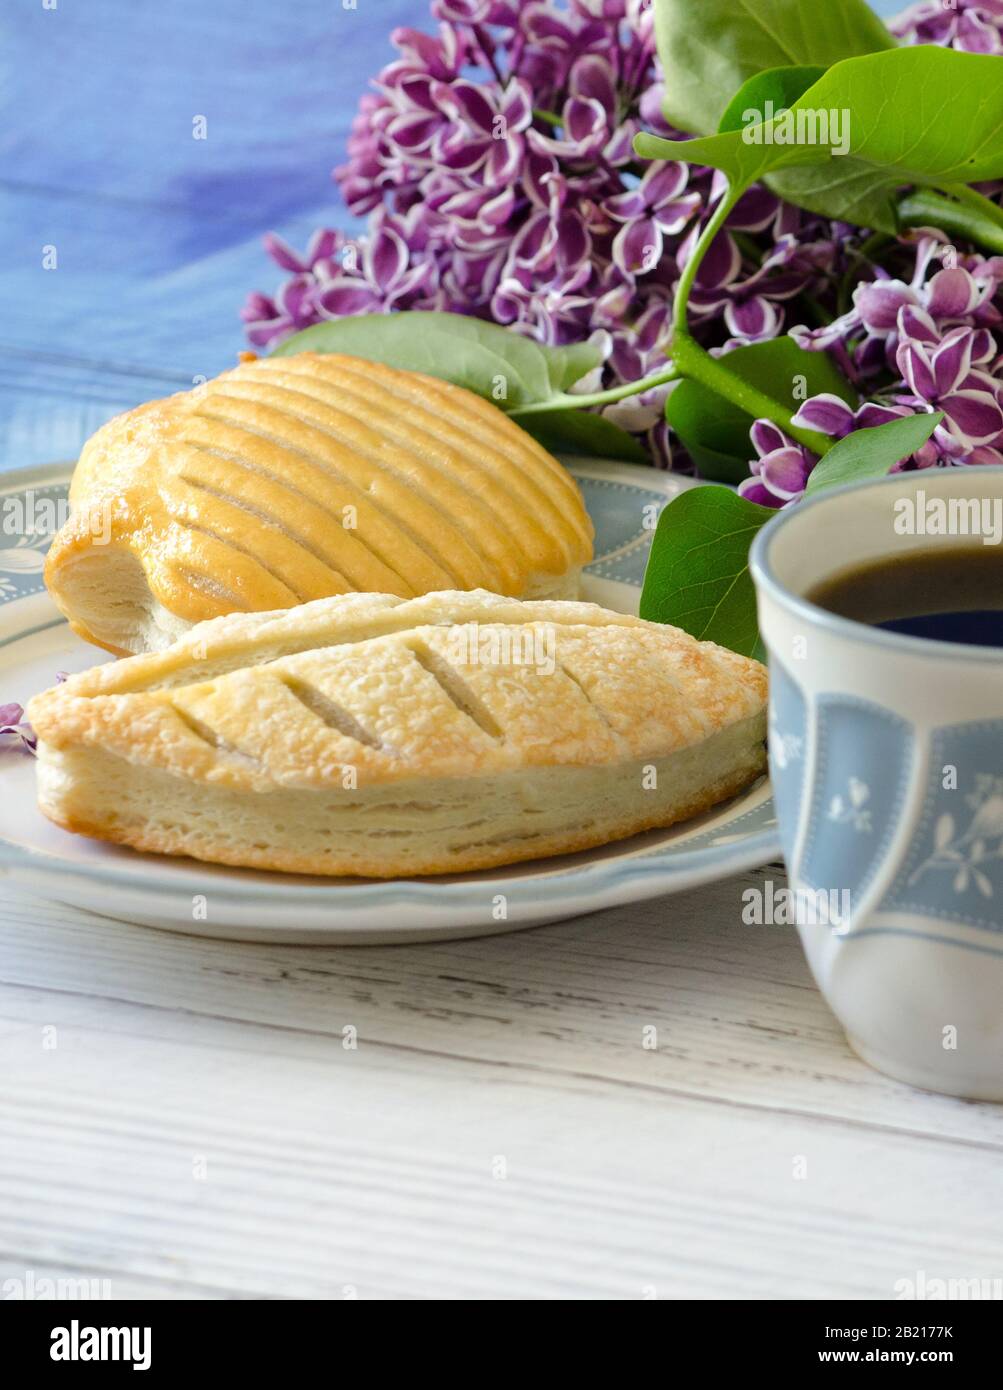 Puffgebäck auf dem Teller ist mit Kaffee und einem Blumenstrauß aus Flieder für ein angenehmes leichtes Frühstück kombiniert Stockfoto